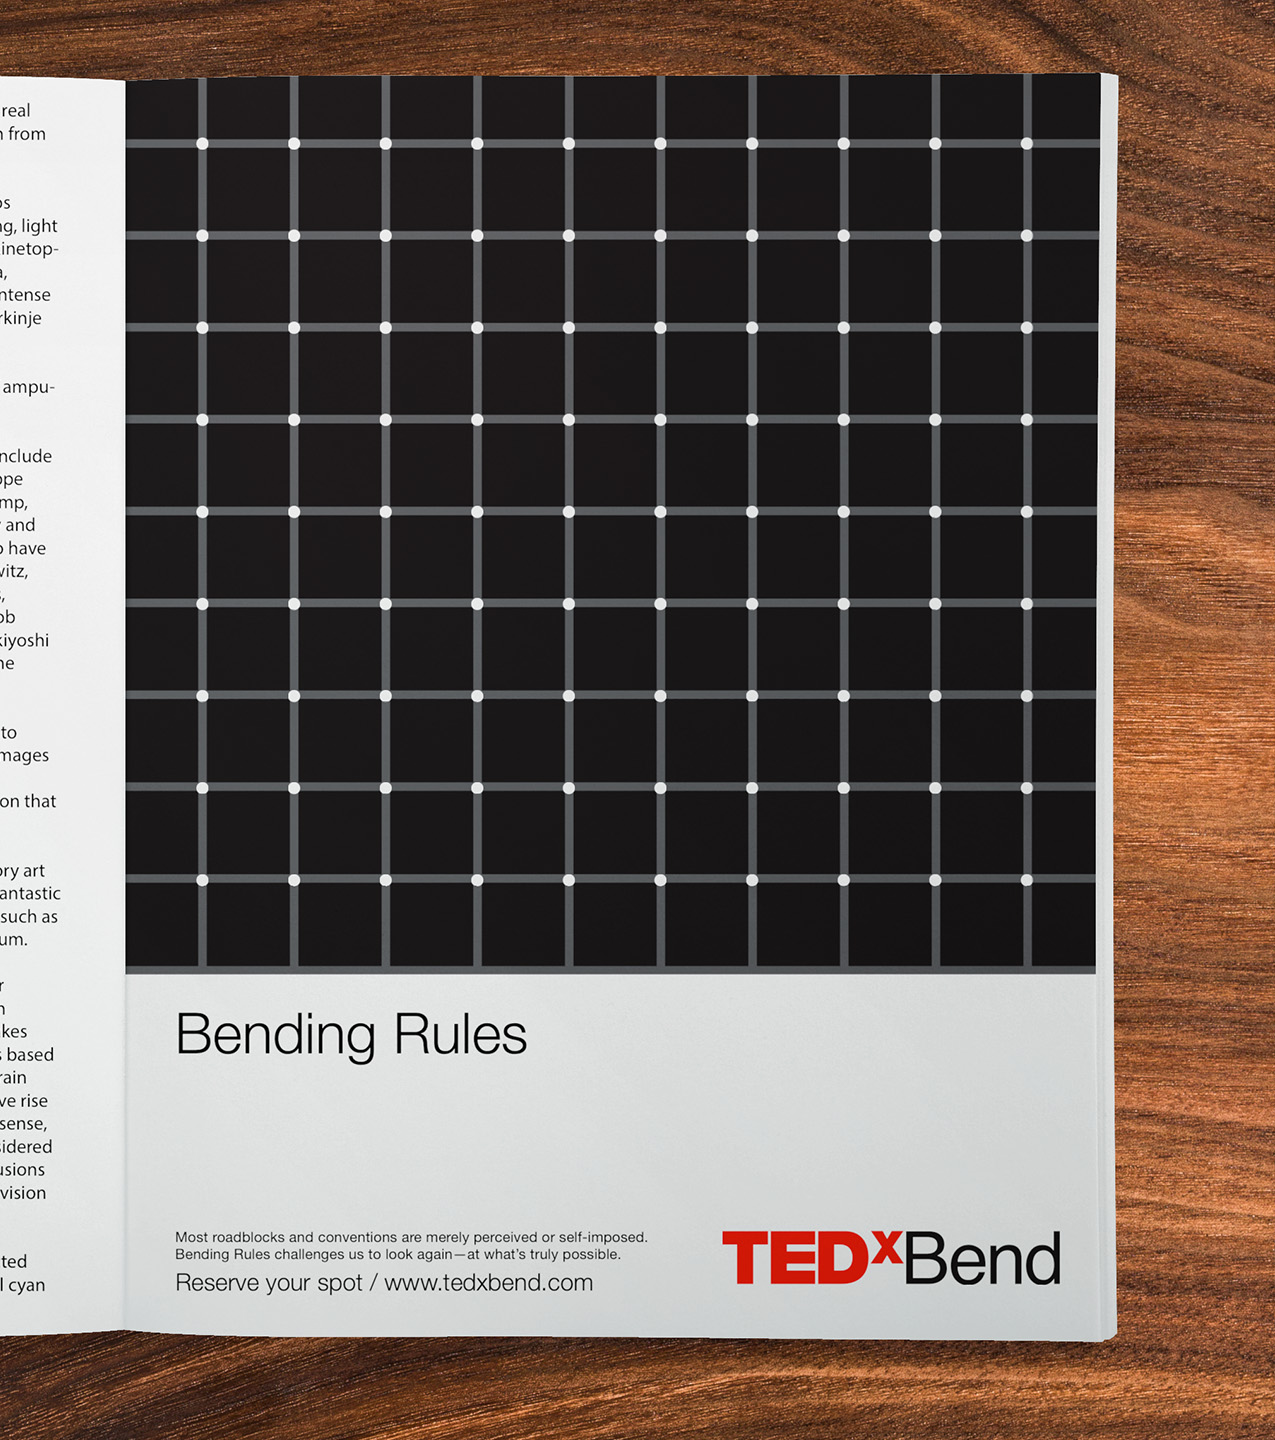 TEDxBend-BendingRules-Ad